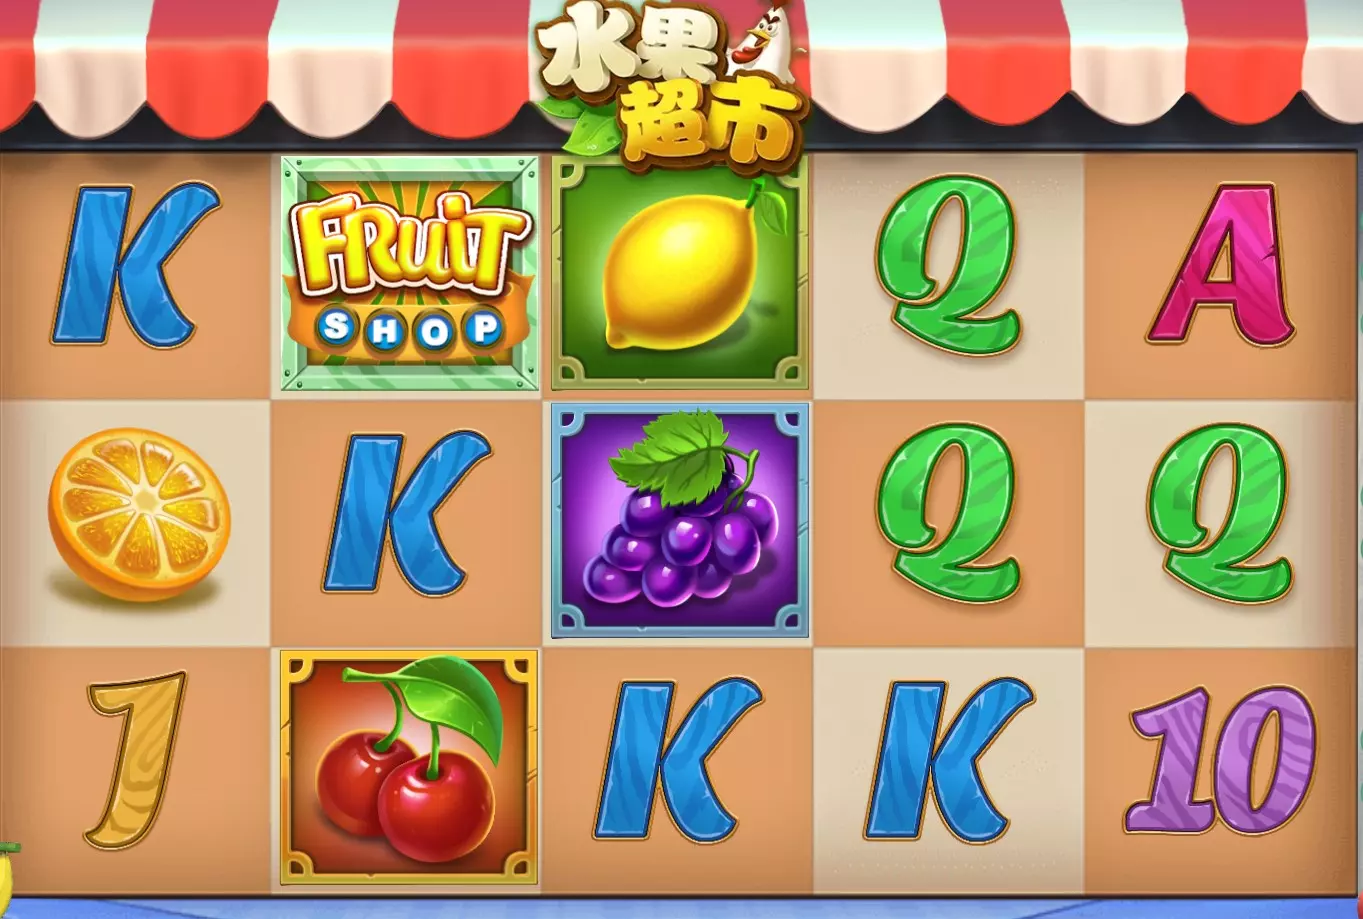 DB電子水果超市玩法規則說明